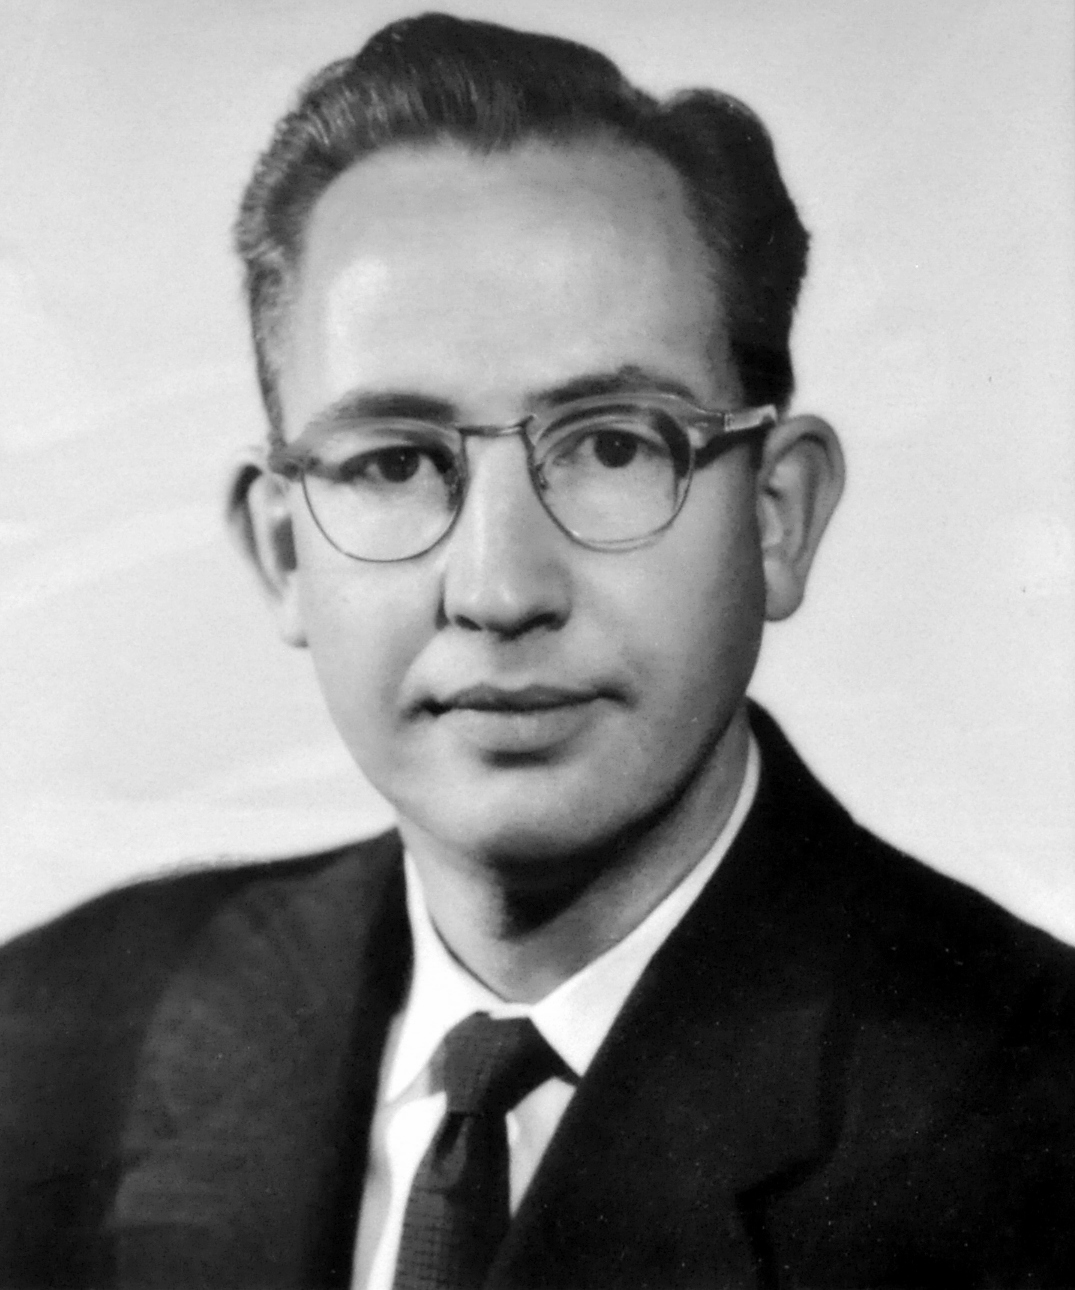 Lester A. Smith